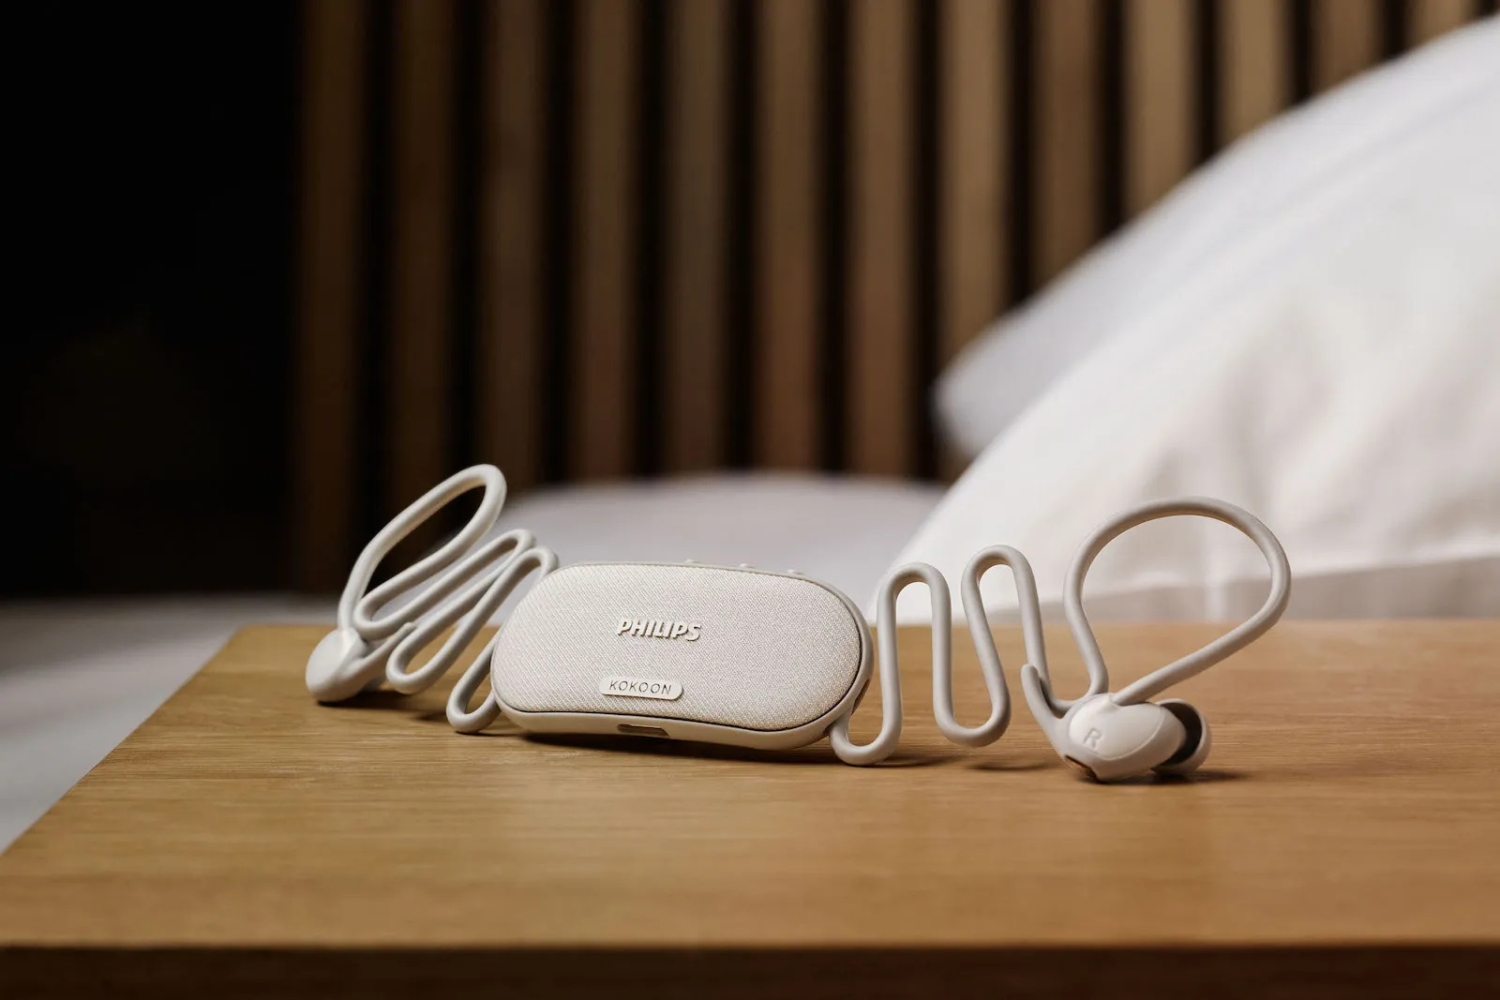 Philips stellt ergonomische Schlaf-Ohrhörer vor, die Ihnen helfen, schneller einzuschlafen und Ihr Schlafverhalten zu überwachen